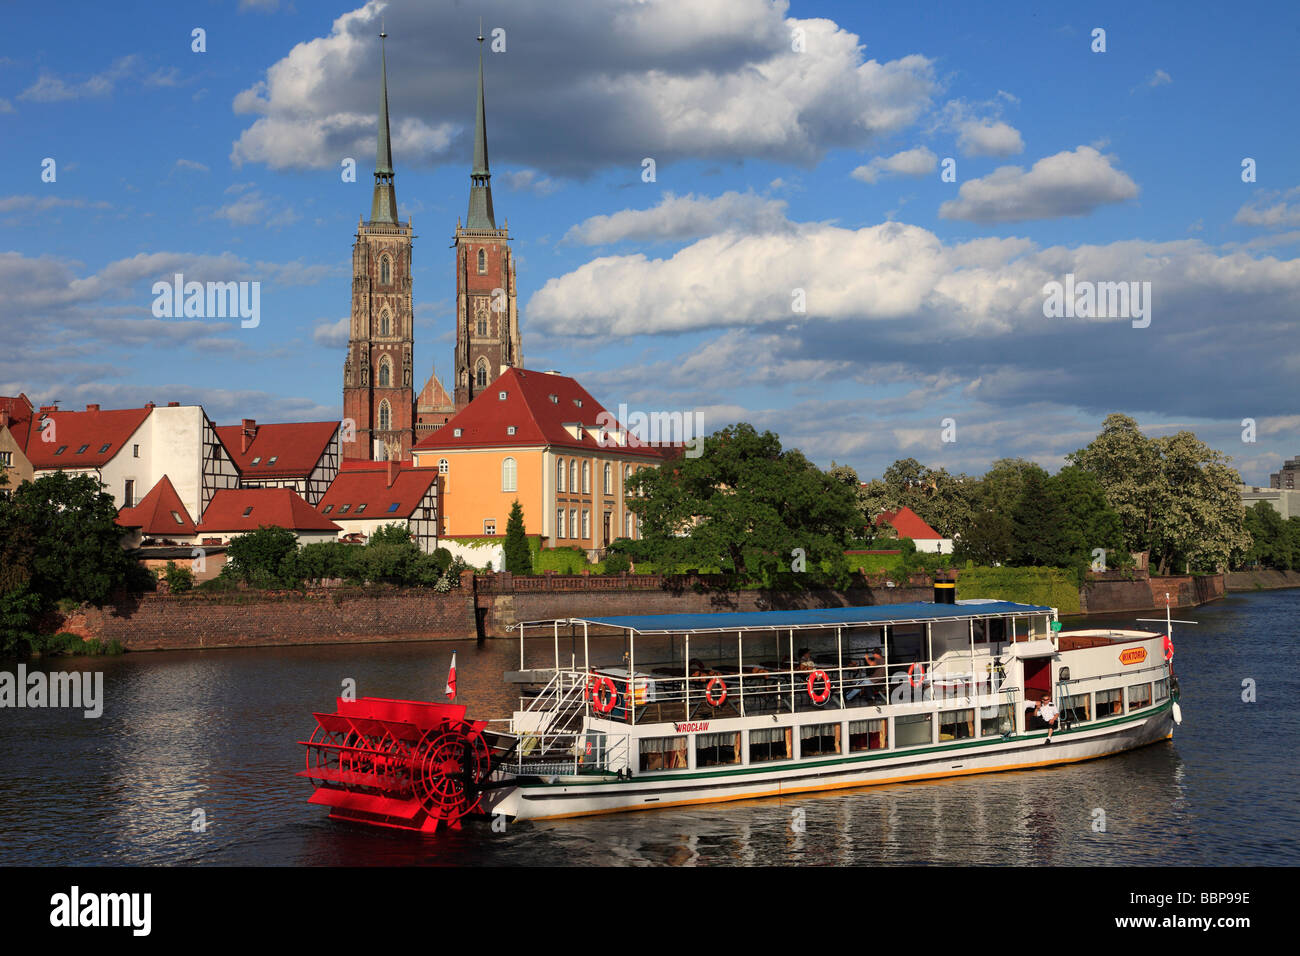 L'île de la cathédrale de Wroclaw Pologne Oder bateaux Banque D'Images